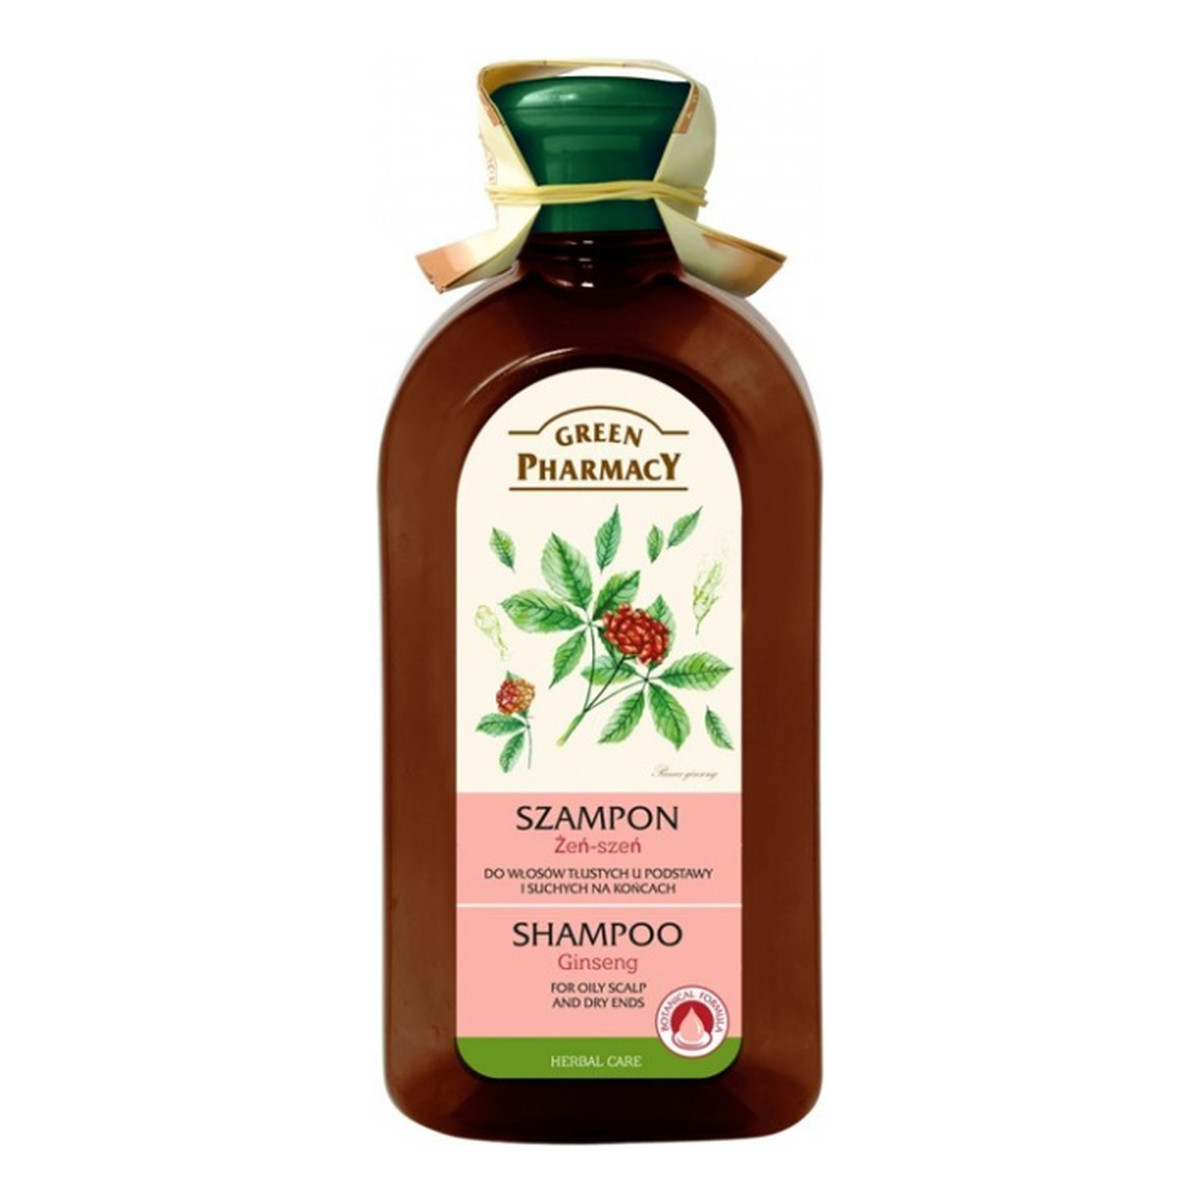 Green Pharmacy Herbal Cosmetics Hair Care Szampon Do Włosów Żeń-Szeń 350ml